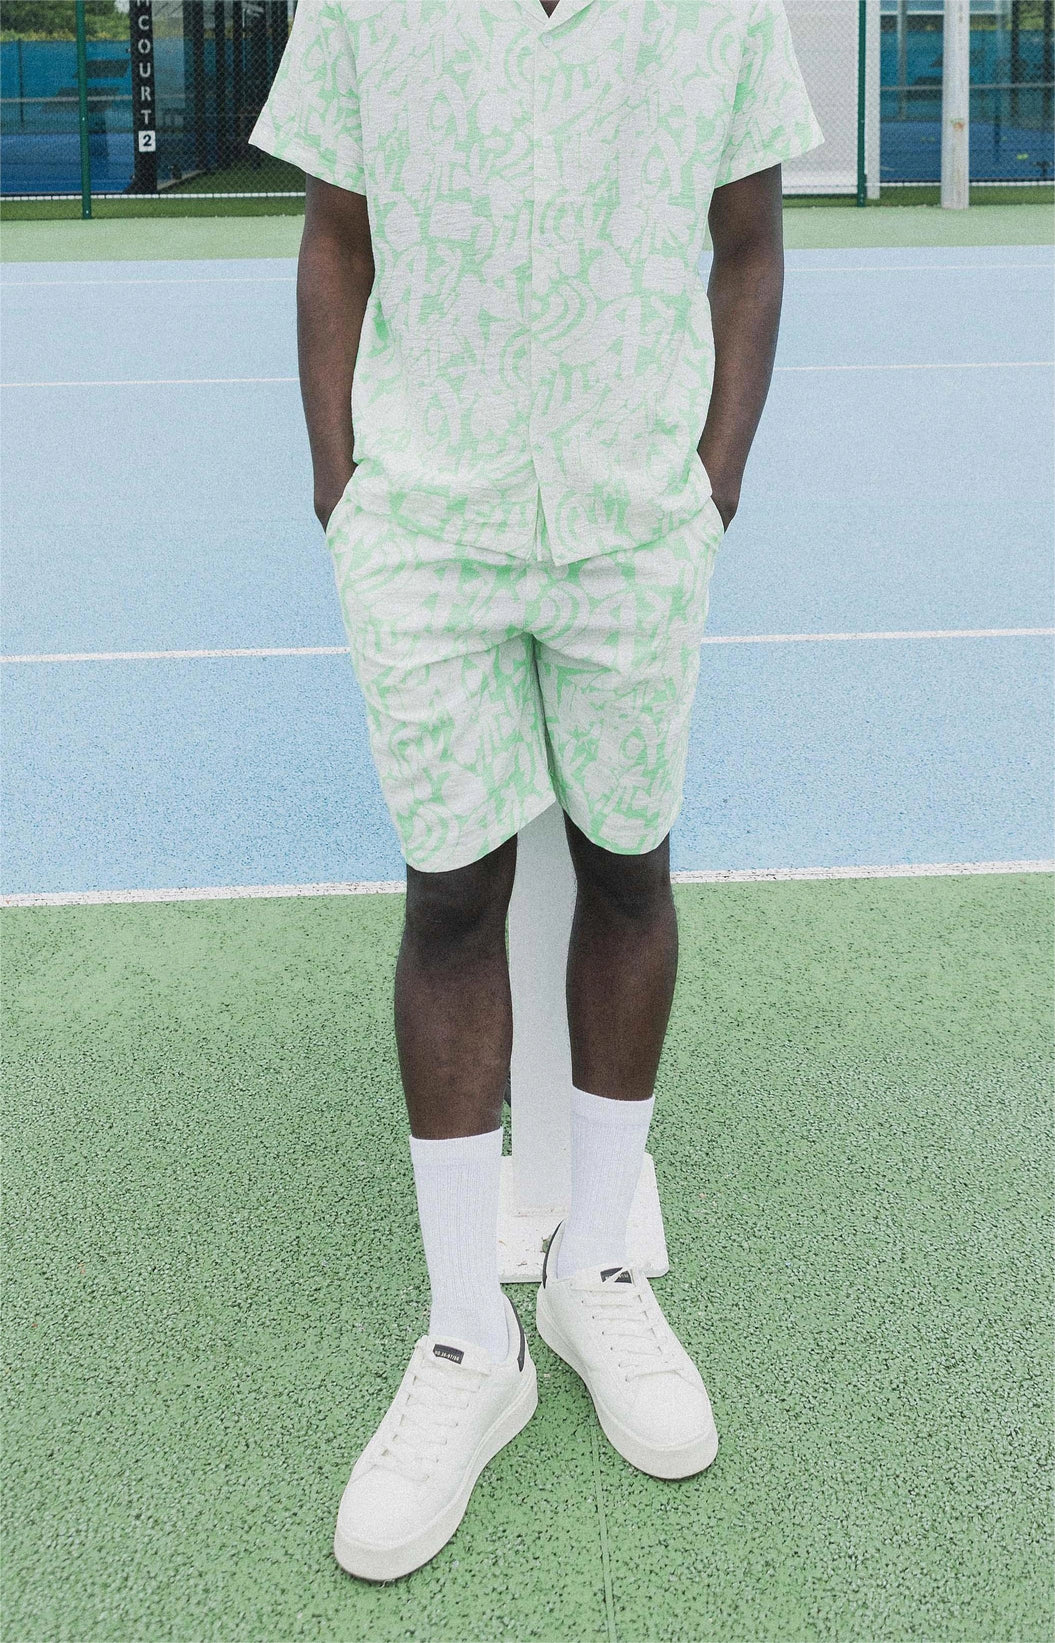 Abstract patterned shorts and shirt set